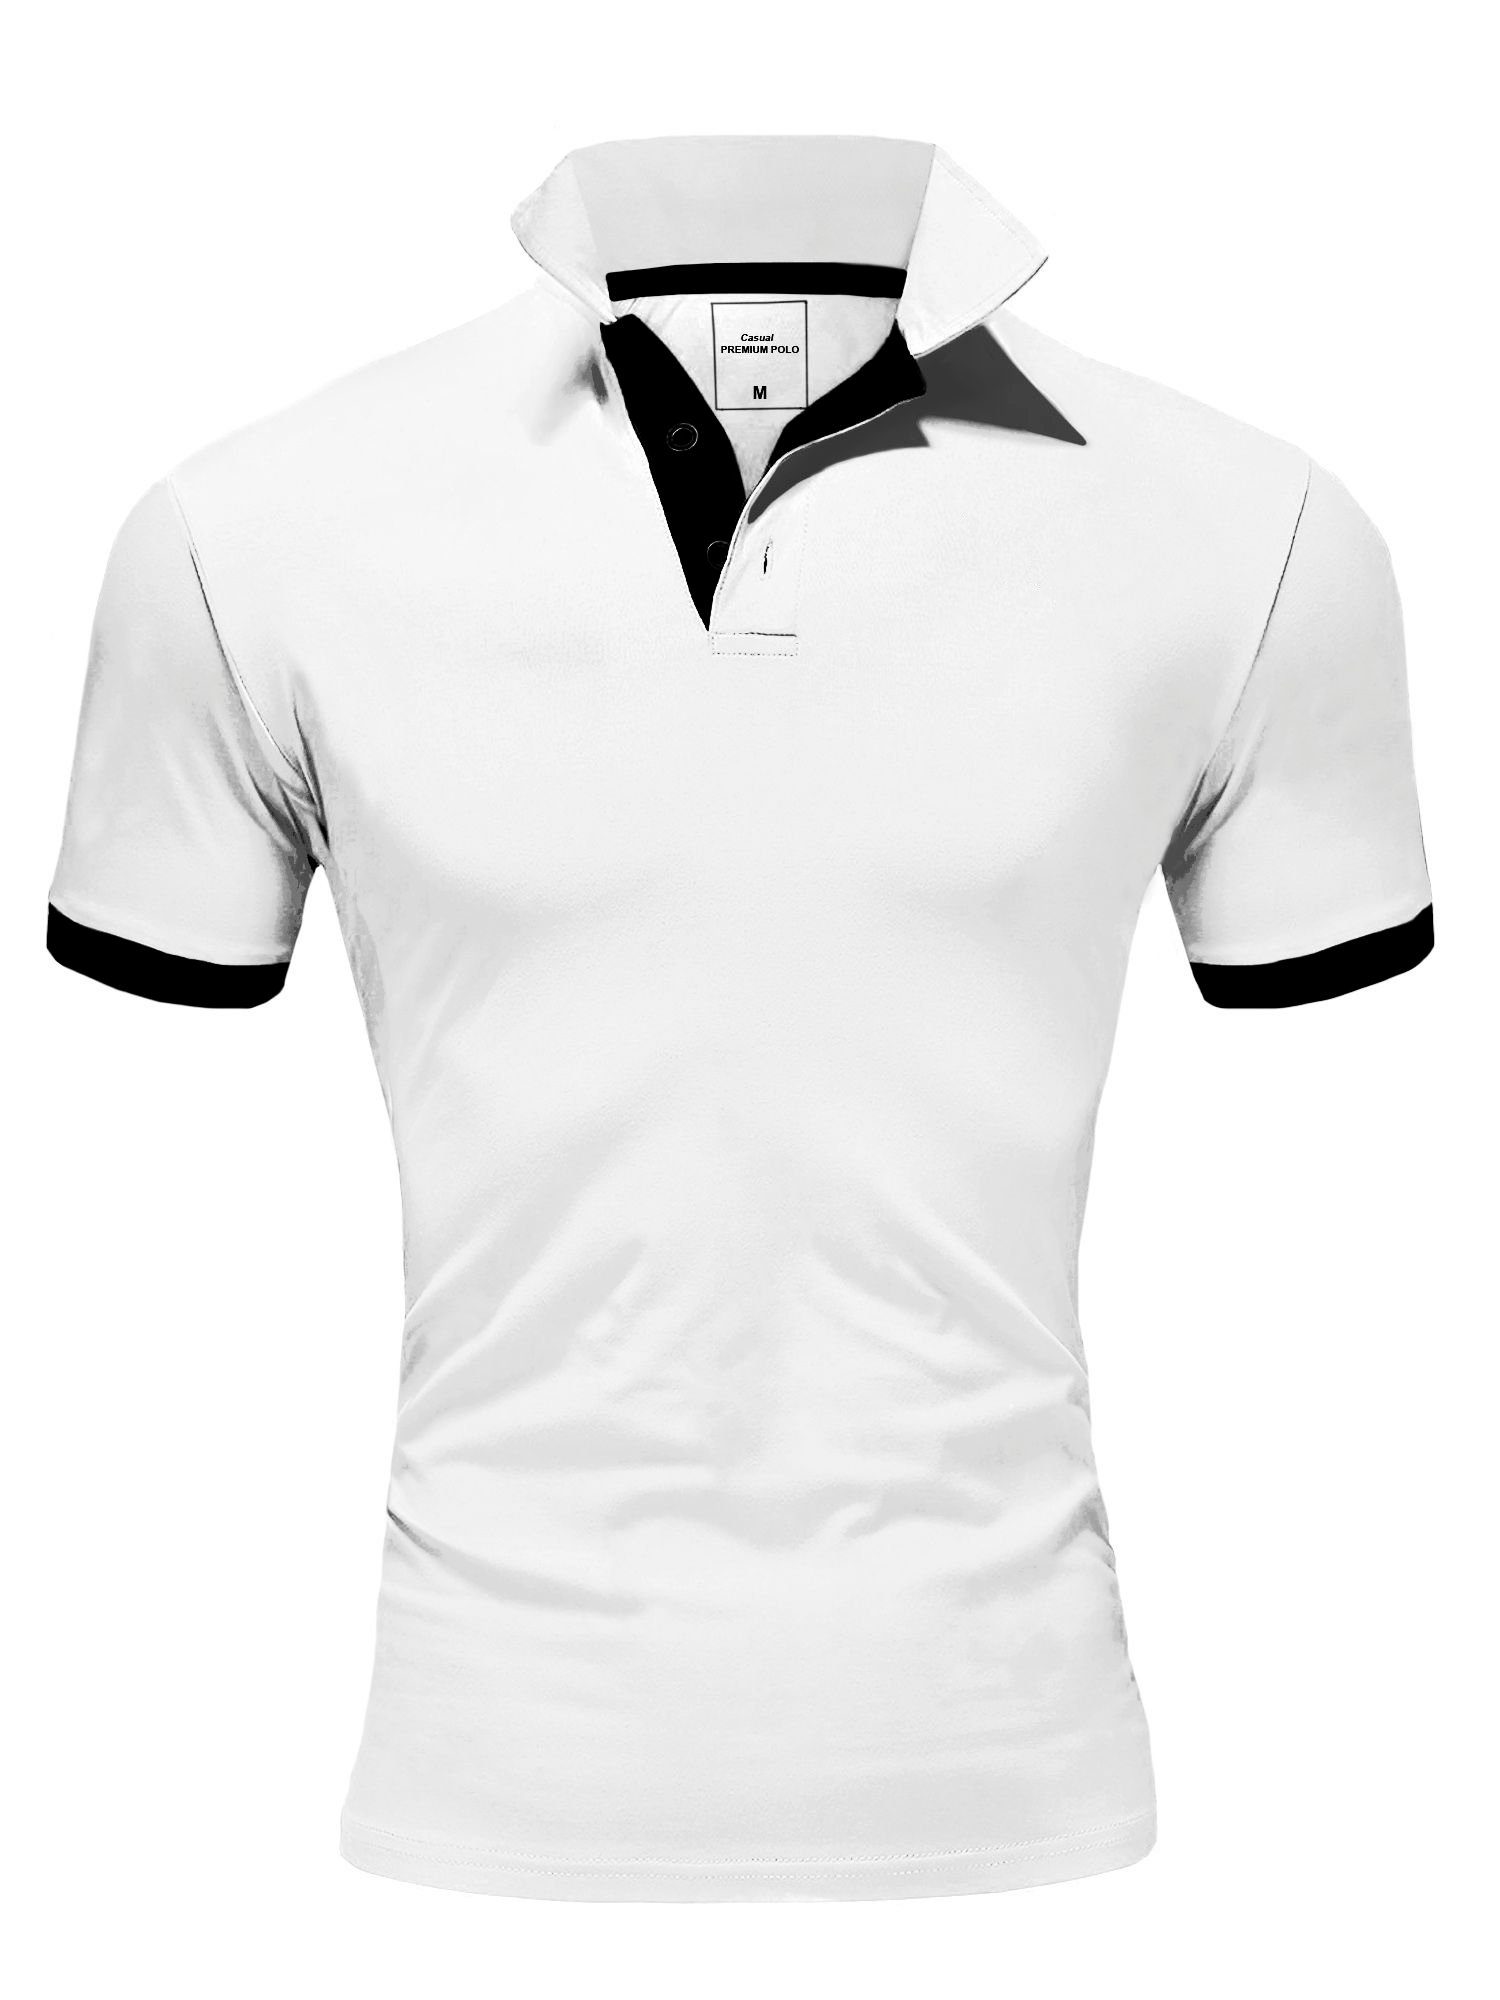 Weiße Poloshirts für Herren kaufen » Weiße Polohemden | OTTO